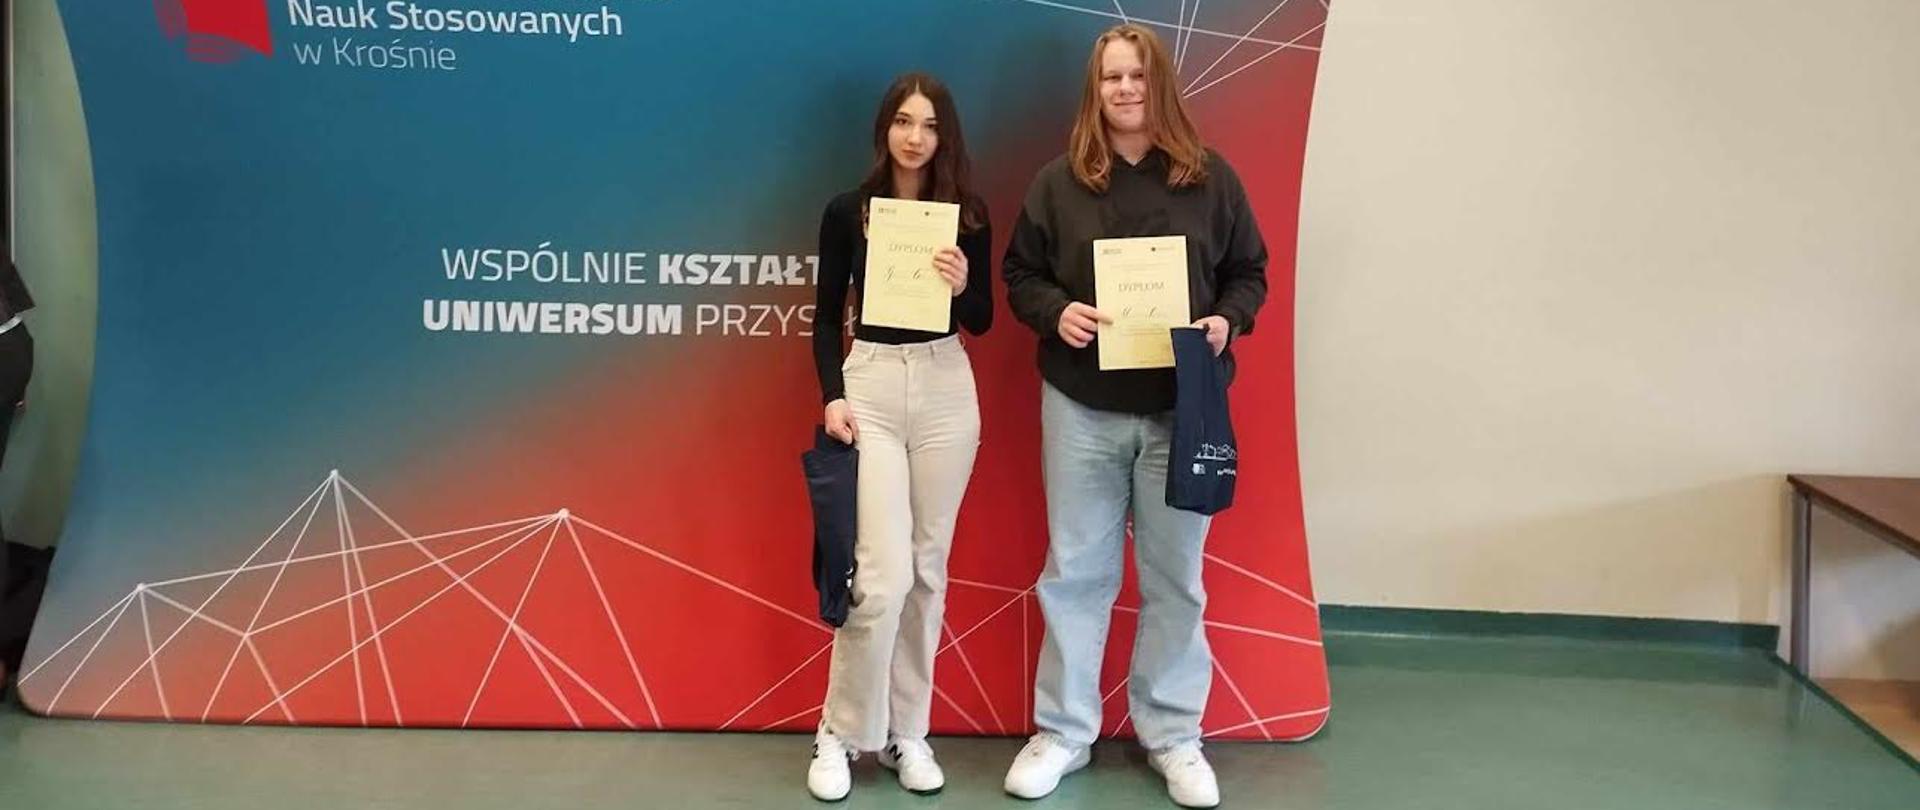 Uczniowie jasielskiego Ekonomika laureatami konkursu z języka angielskiego dla szkół ponadpodstawowych w Państwowej Akademii Nauk Stosowanych w Krośnie.